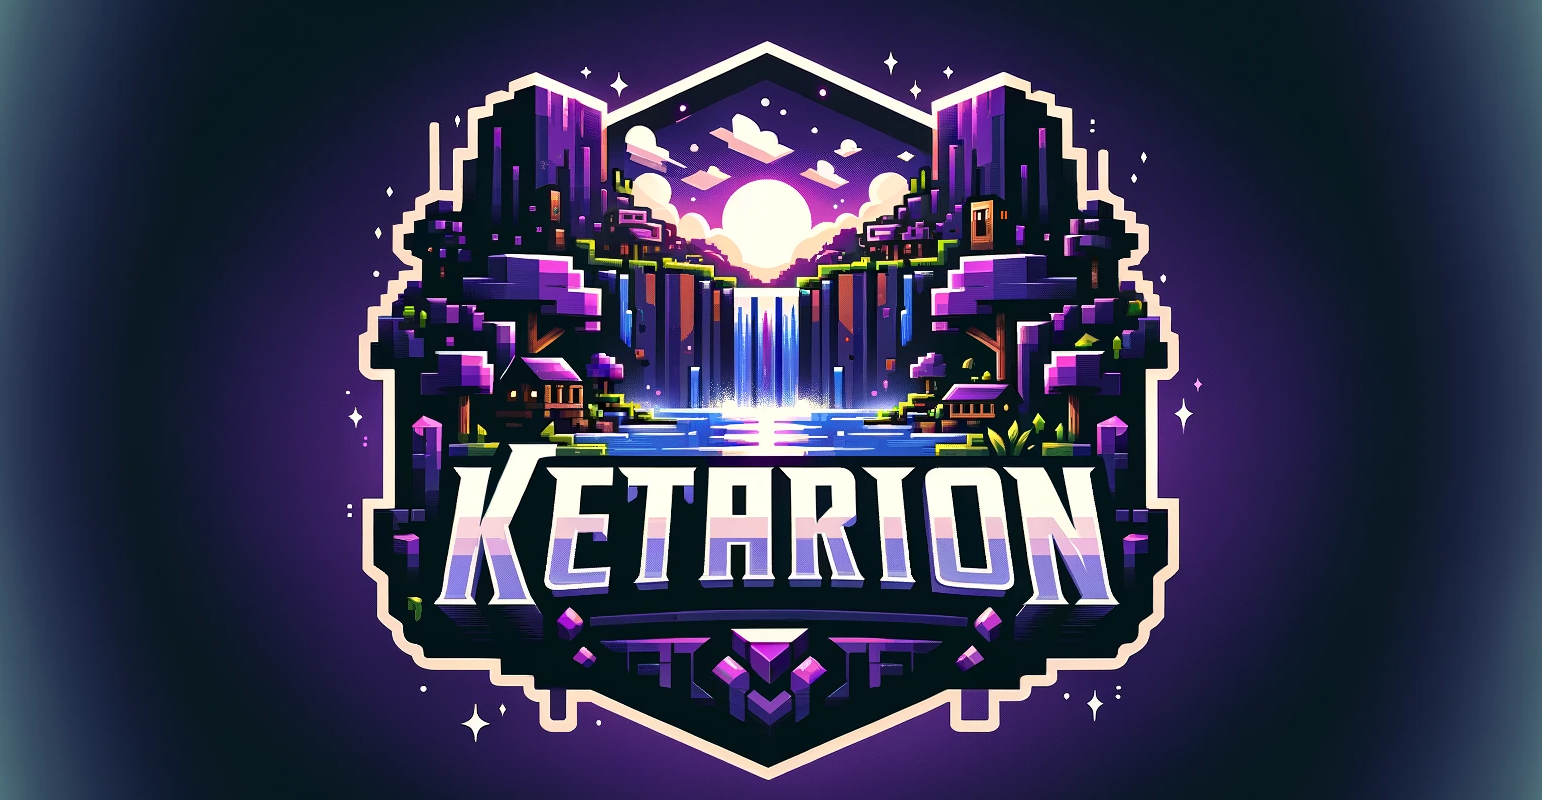 ketarion logo new BIG (320x166).png